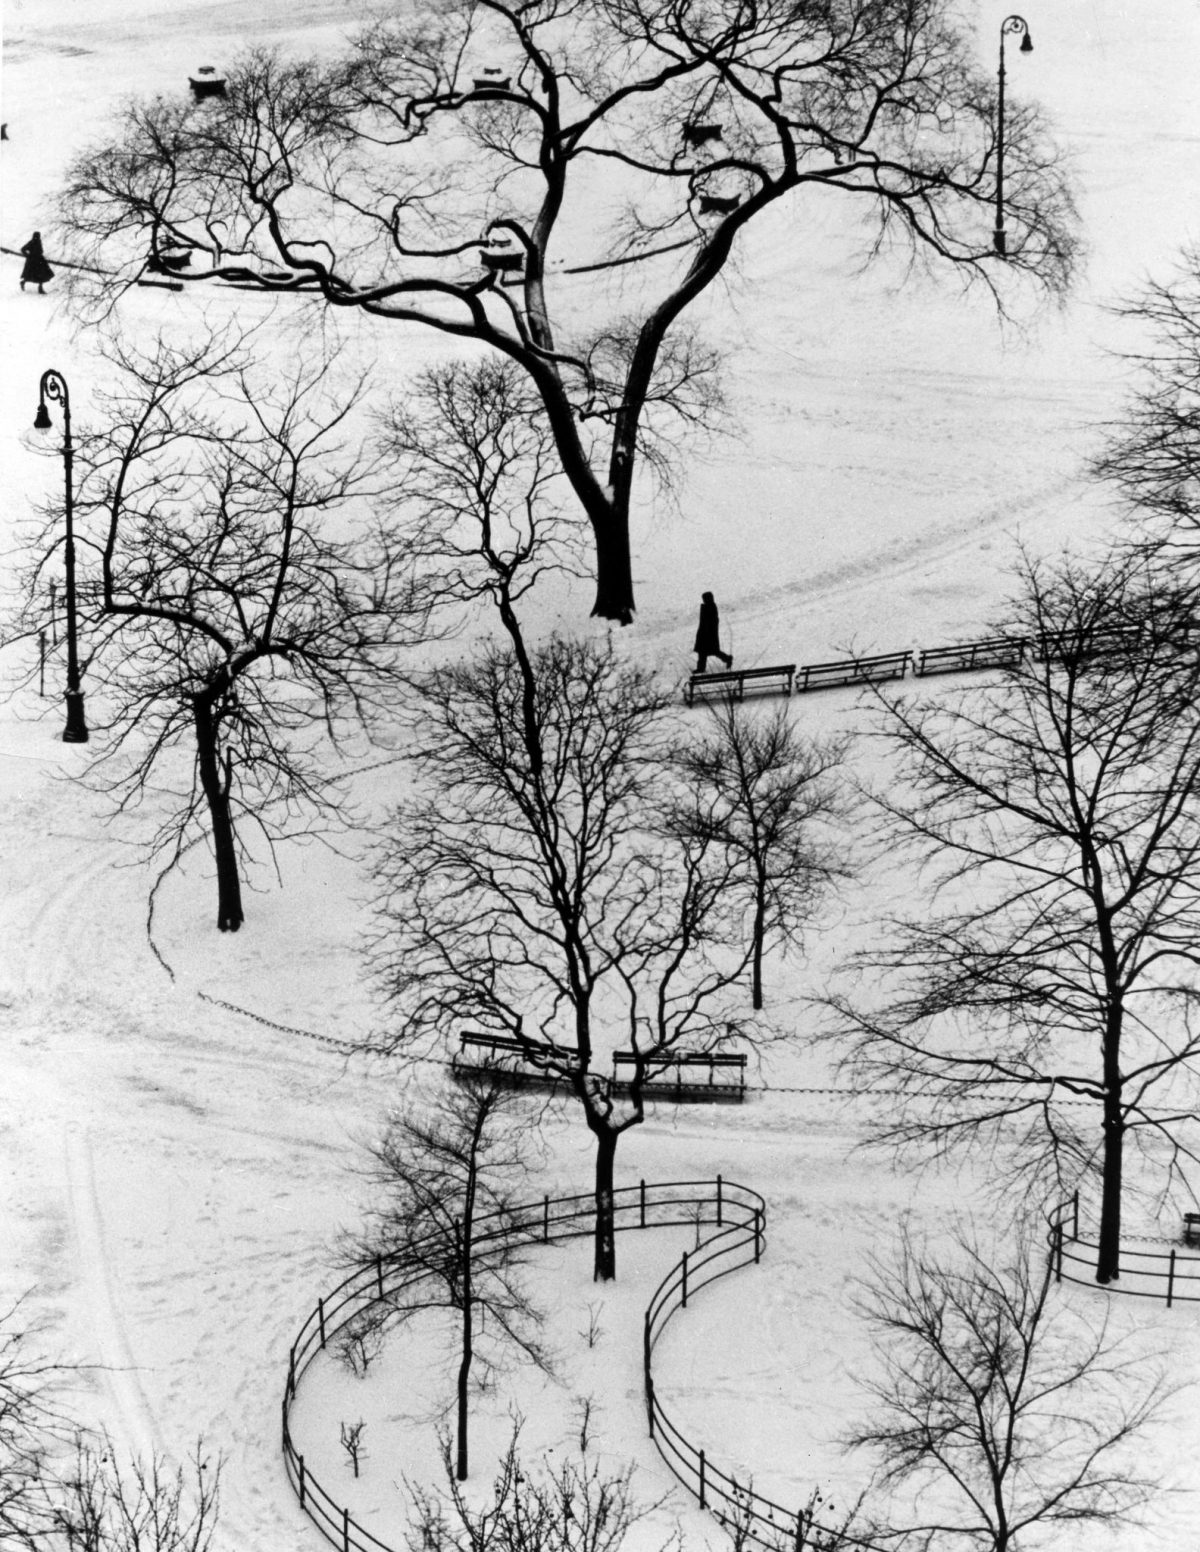 Image Washington Square Day. 1954.